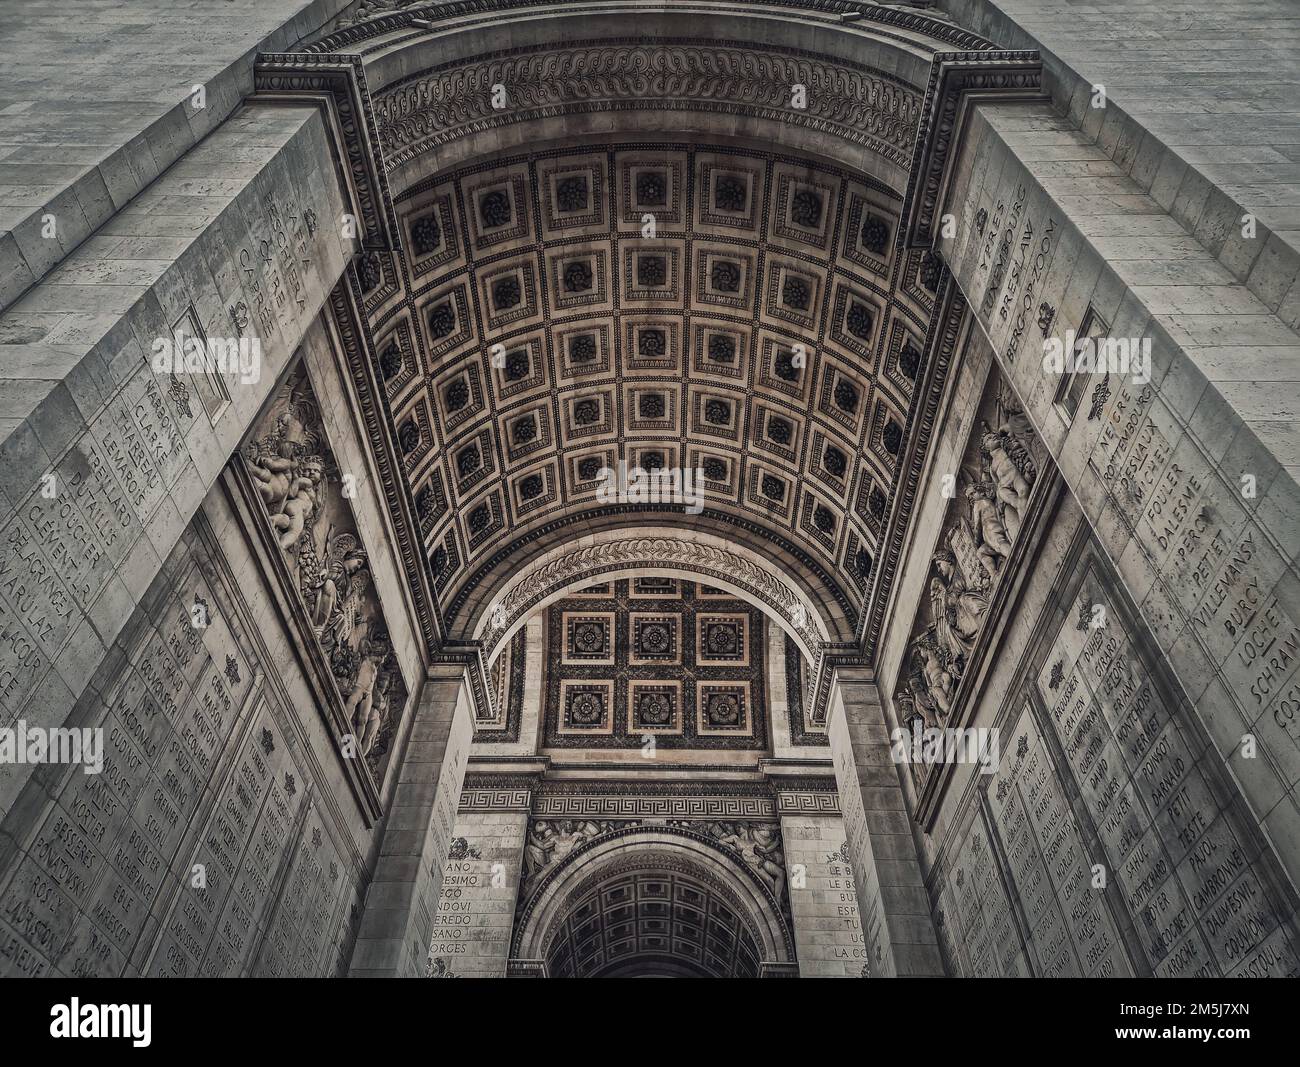 Vue sous l'arche triomphale, à Paris, France. Détails architecturaux du célèbre monument de l'Arc de triomphe Banque D'Images